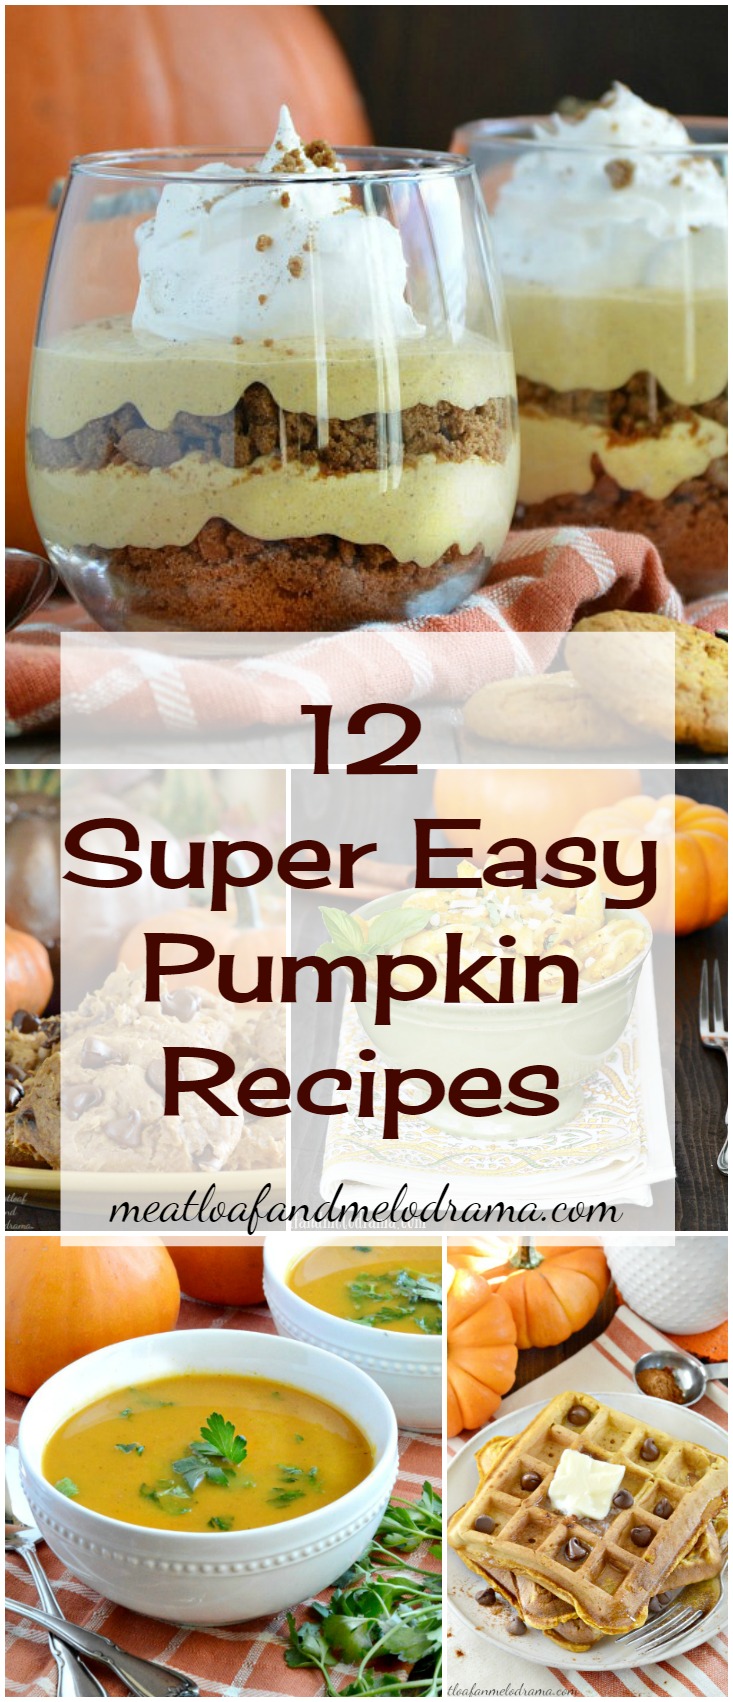 12 Super Easy Pumpkin Recipes for fall